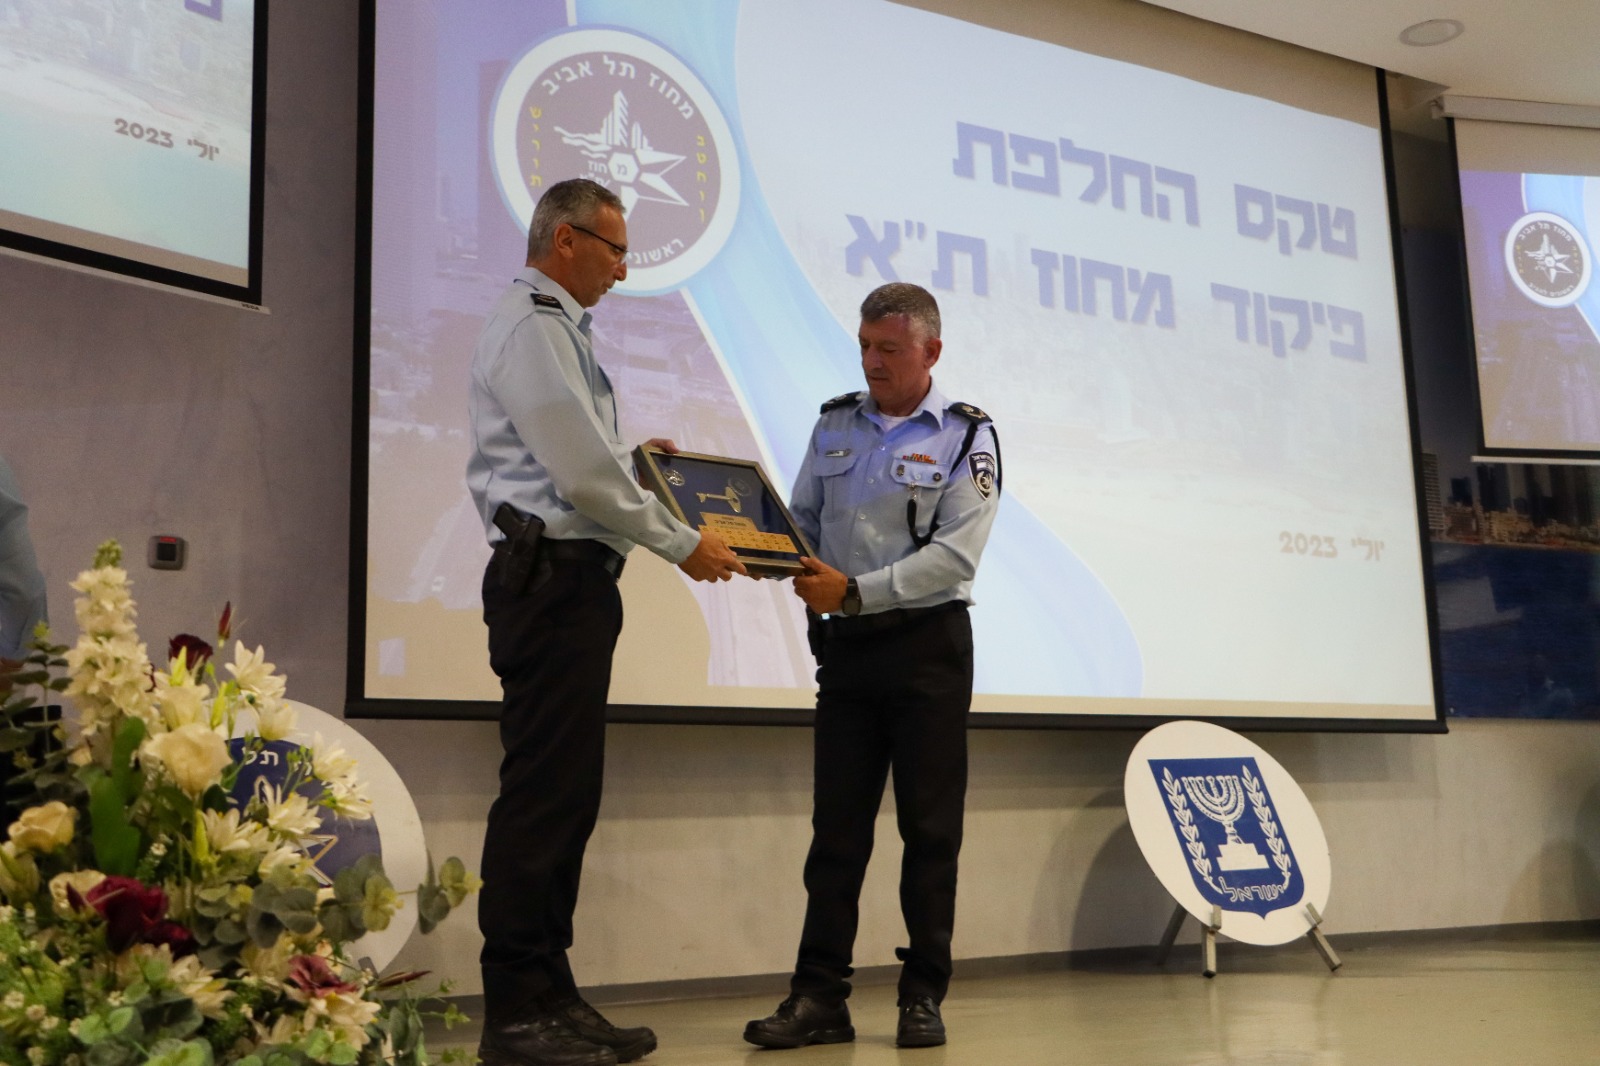   تعيين قائد جديد للشرطة في لواء تل ابيب 